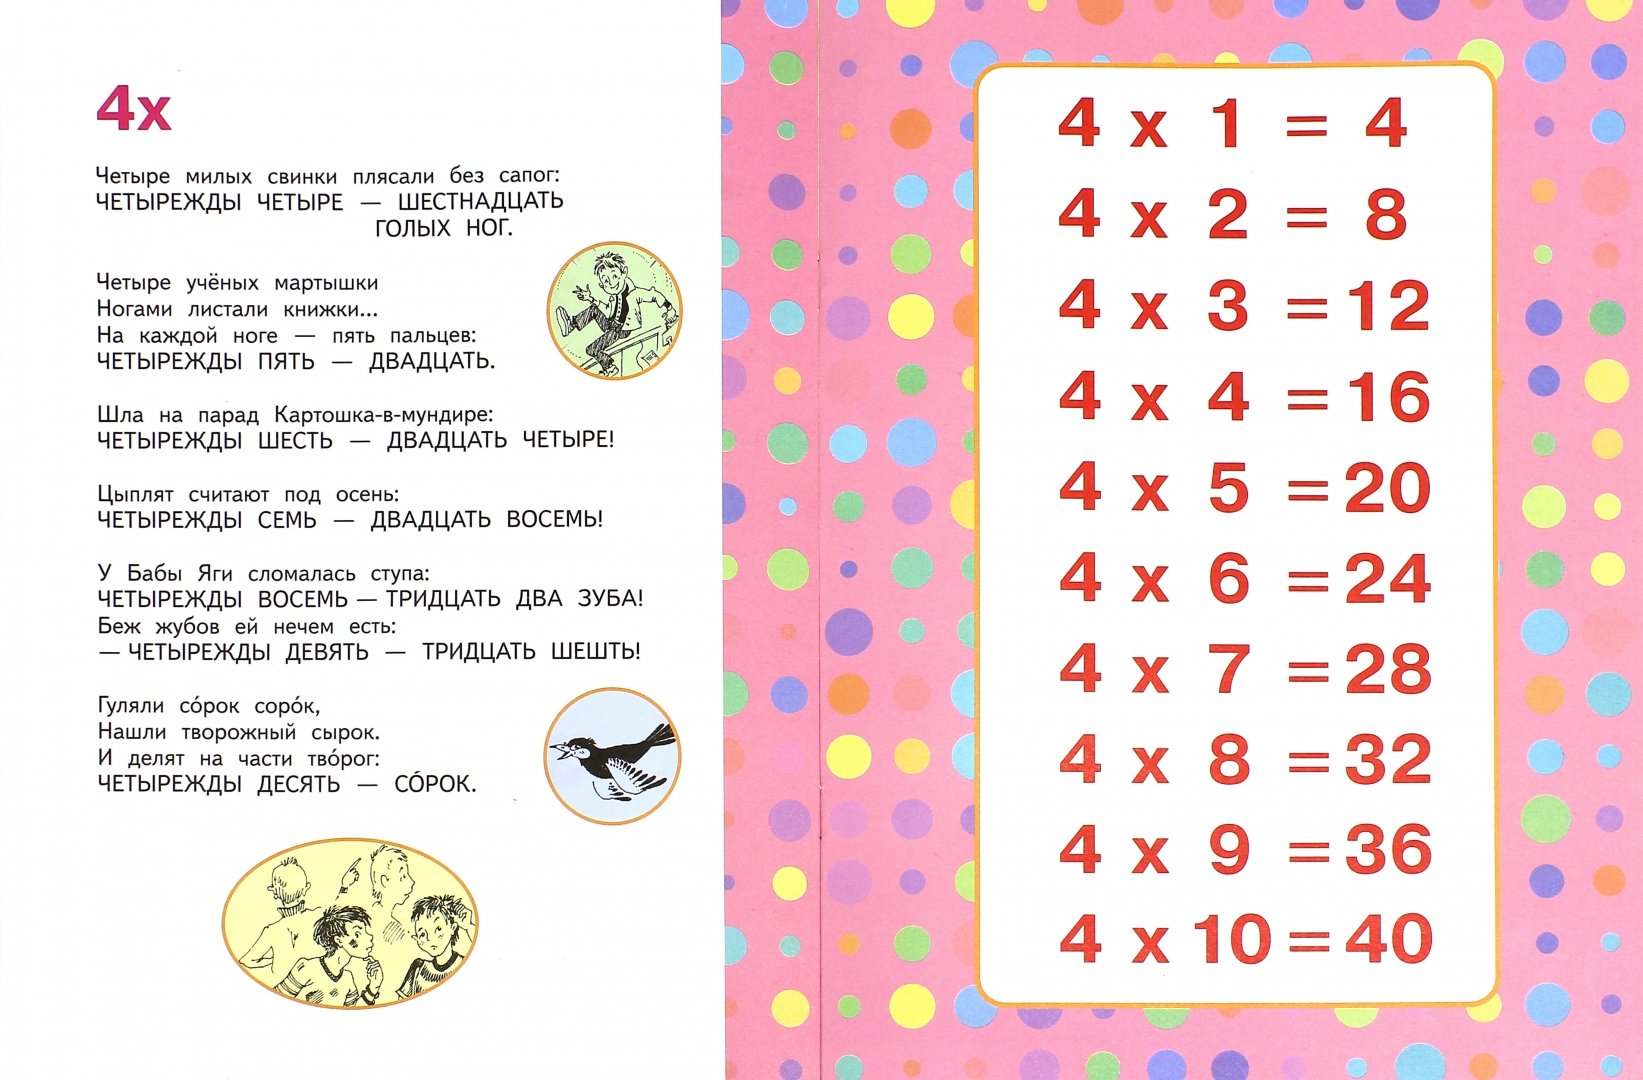 Иллюстрация 1 из 13 для Таблица умножения - Андрей Усачев | Лабиринт - книги. Источник: Лабиринт